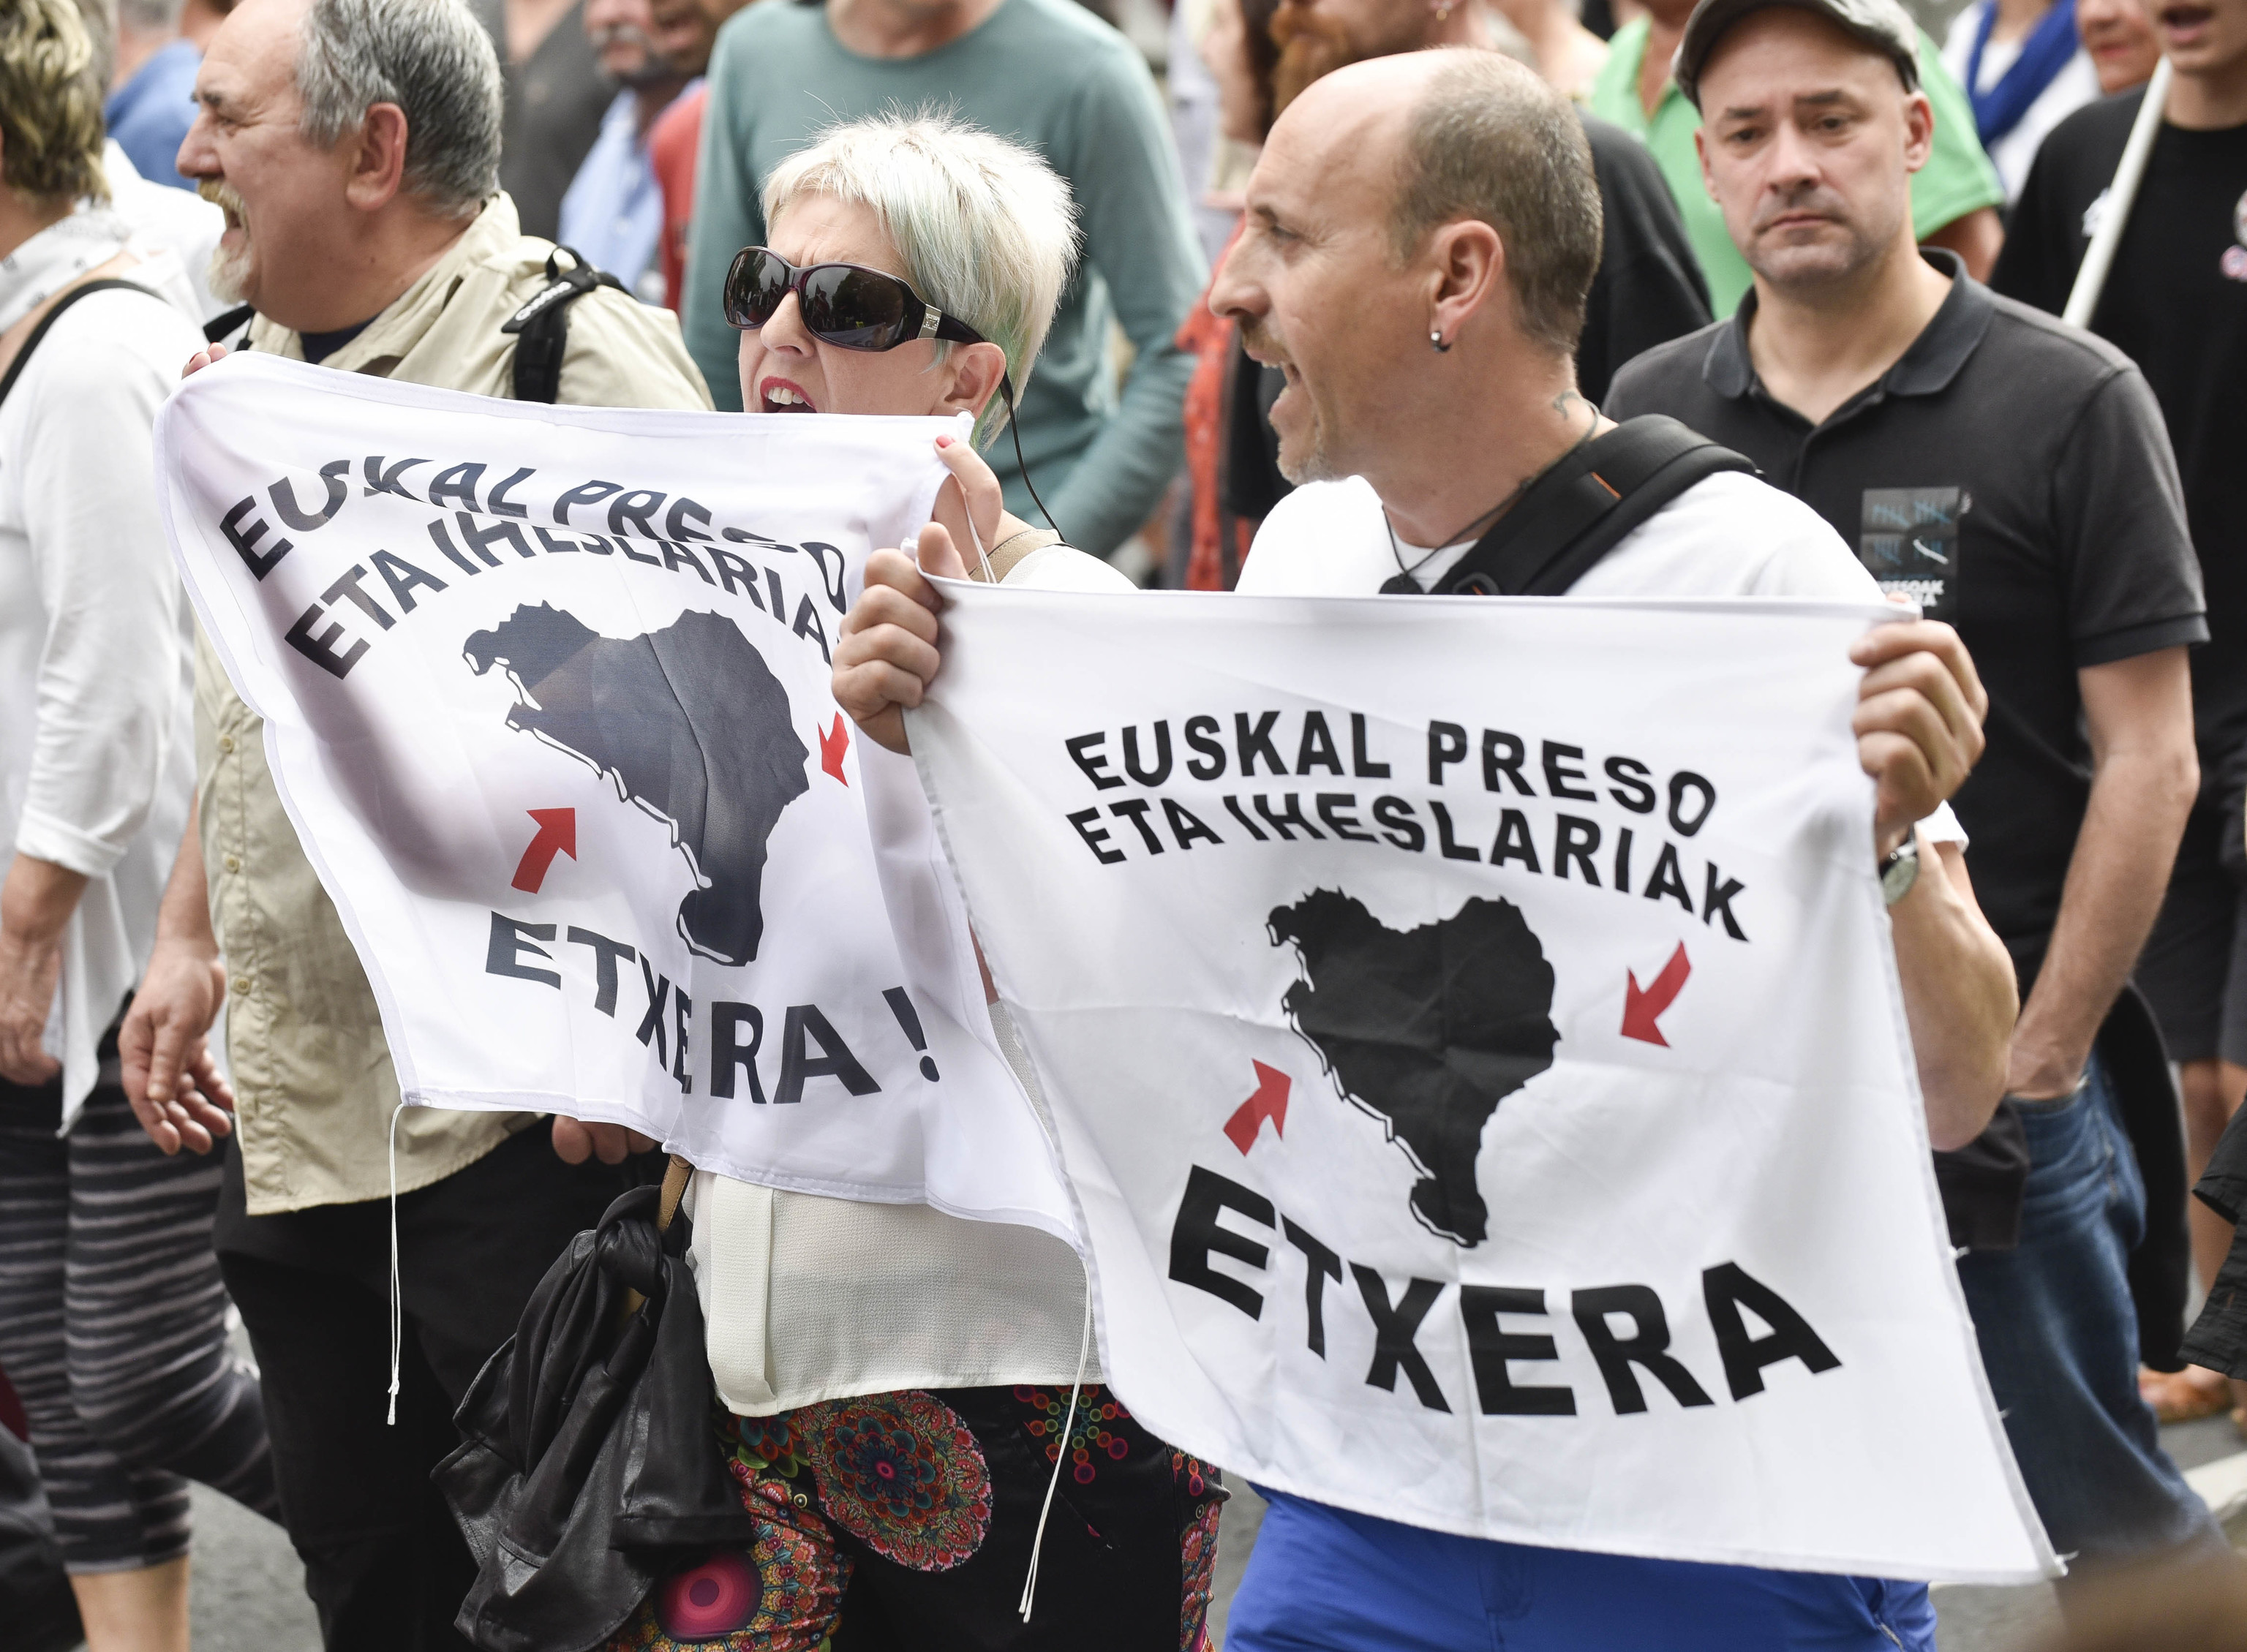 Manifestantes en una marcha por los presos exhiben carteles en euskera para pedir su traslado "a casa".